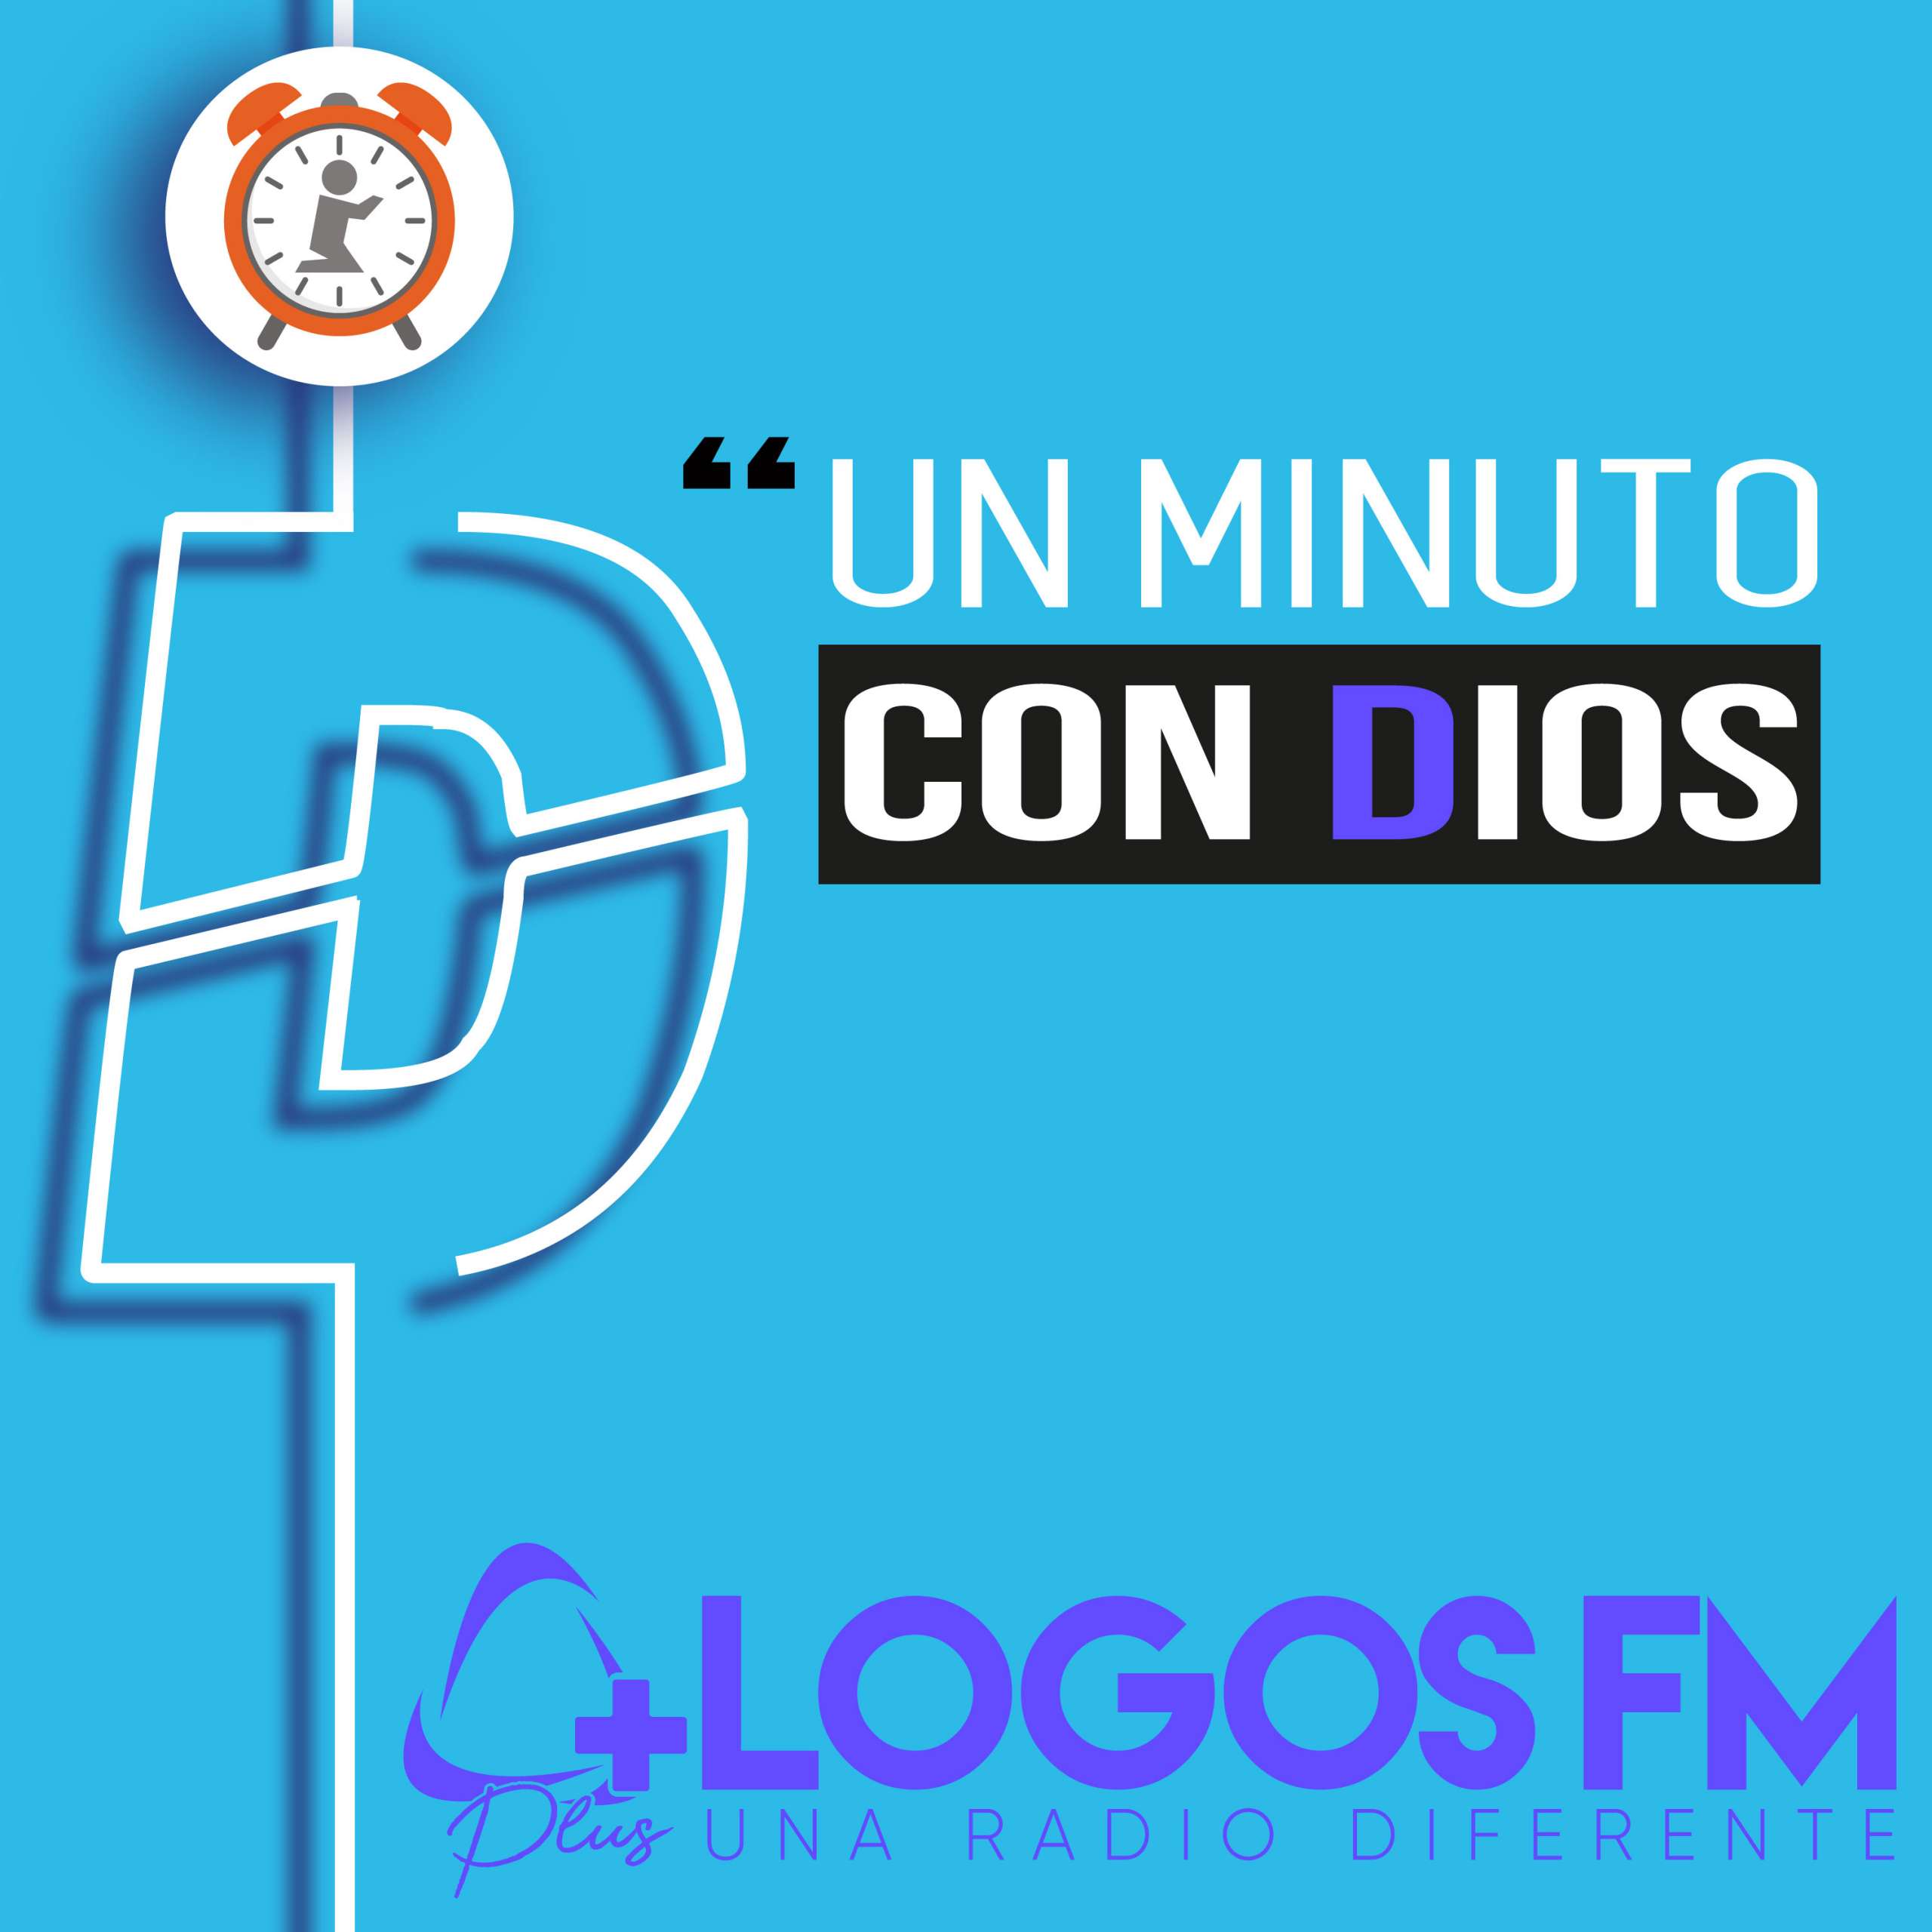 Un minuto con Dios - Episodio 390 - Oniss García